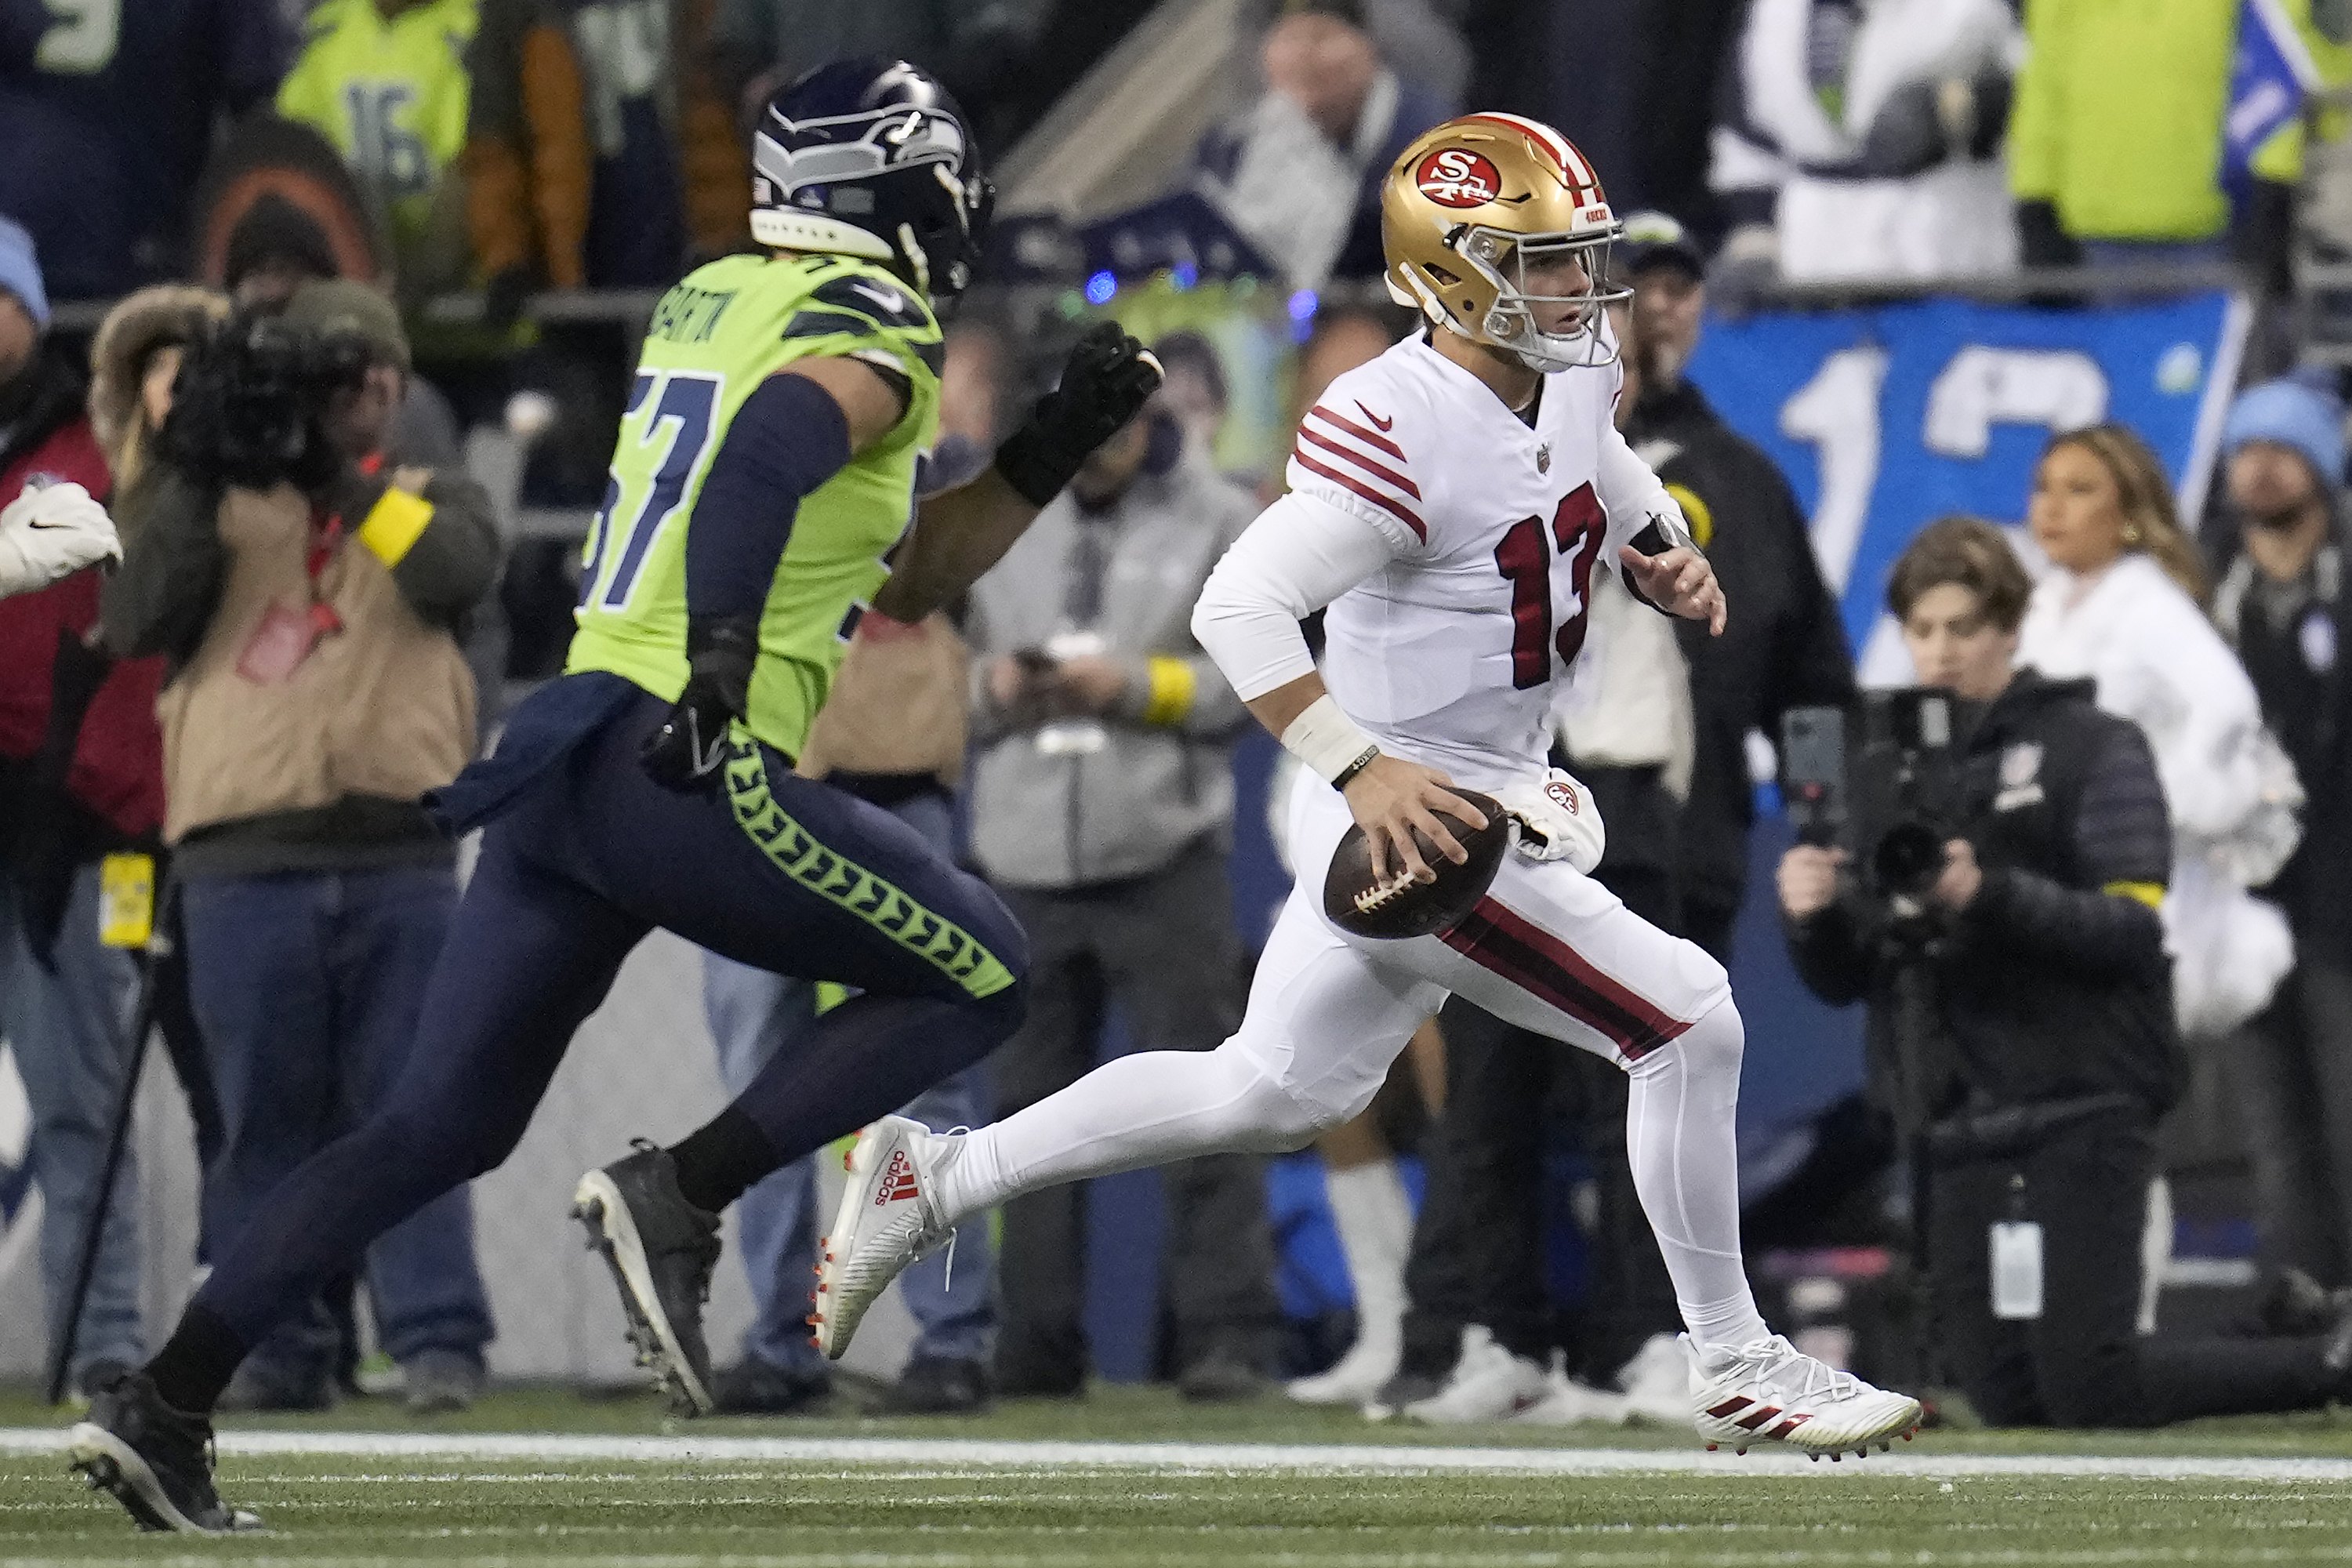 Brock Purdy (13), quarterback de 49ers de San Francisco, corre para tratar de eludir a Cody Barton (57), linebacker de Seahawks de Seattle, durante la primera mitad del juego de la NFL en Seattle, el jueves 15 de diciembre de 2022. (AP Foto/Marcio Jose Sanchez)